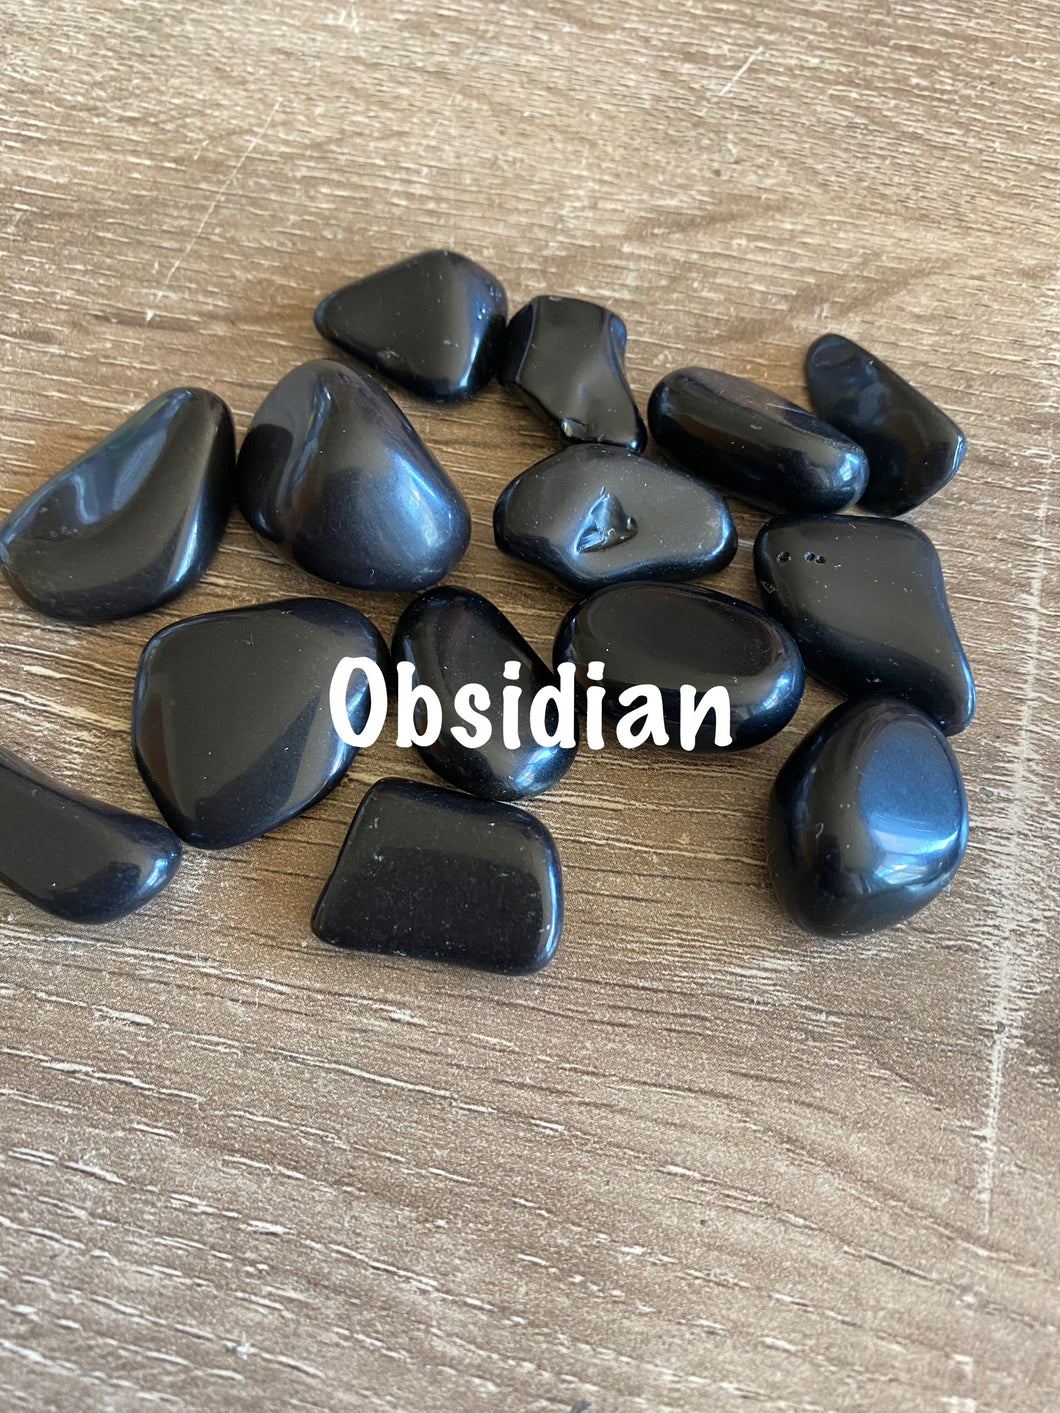 Obsidian tumble stone